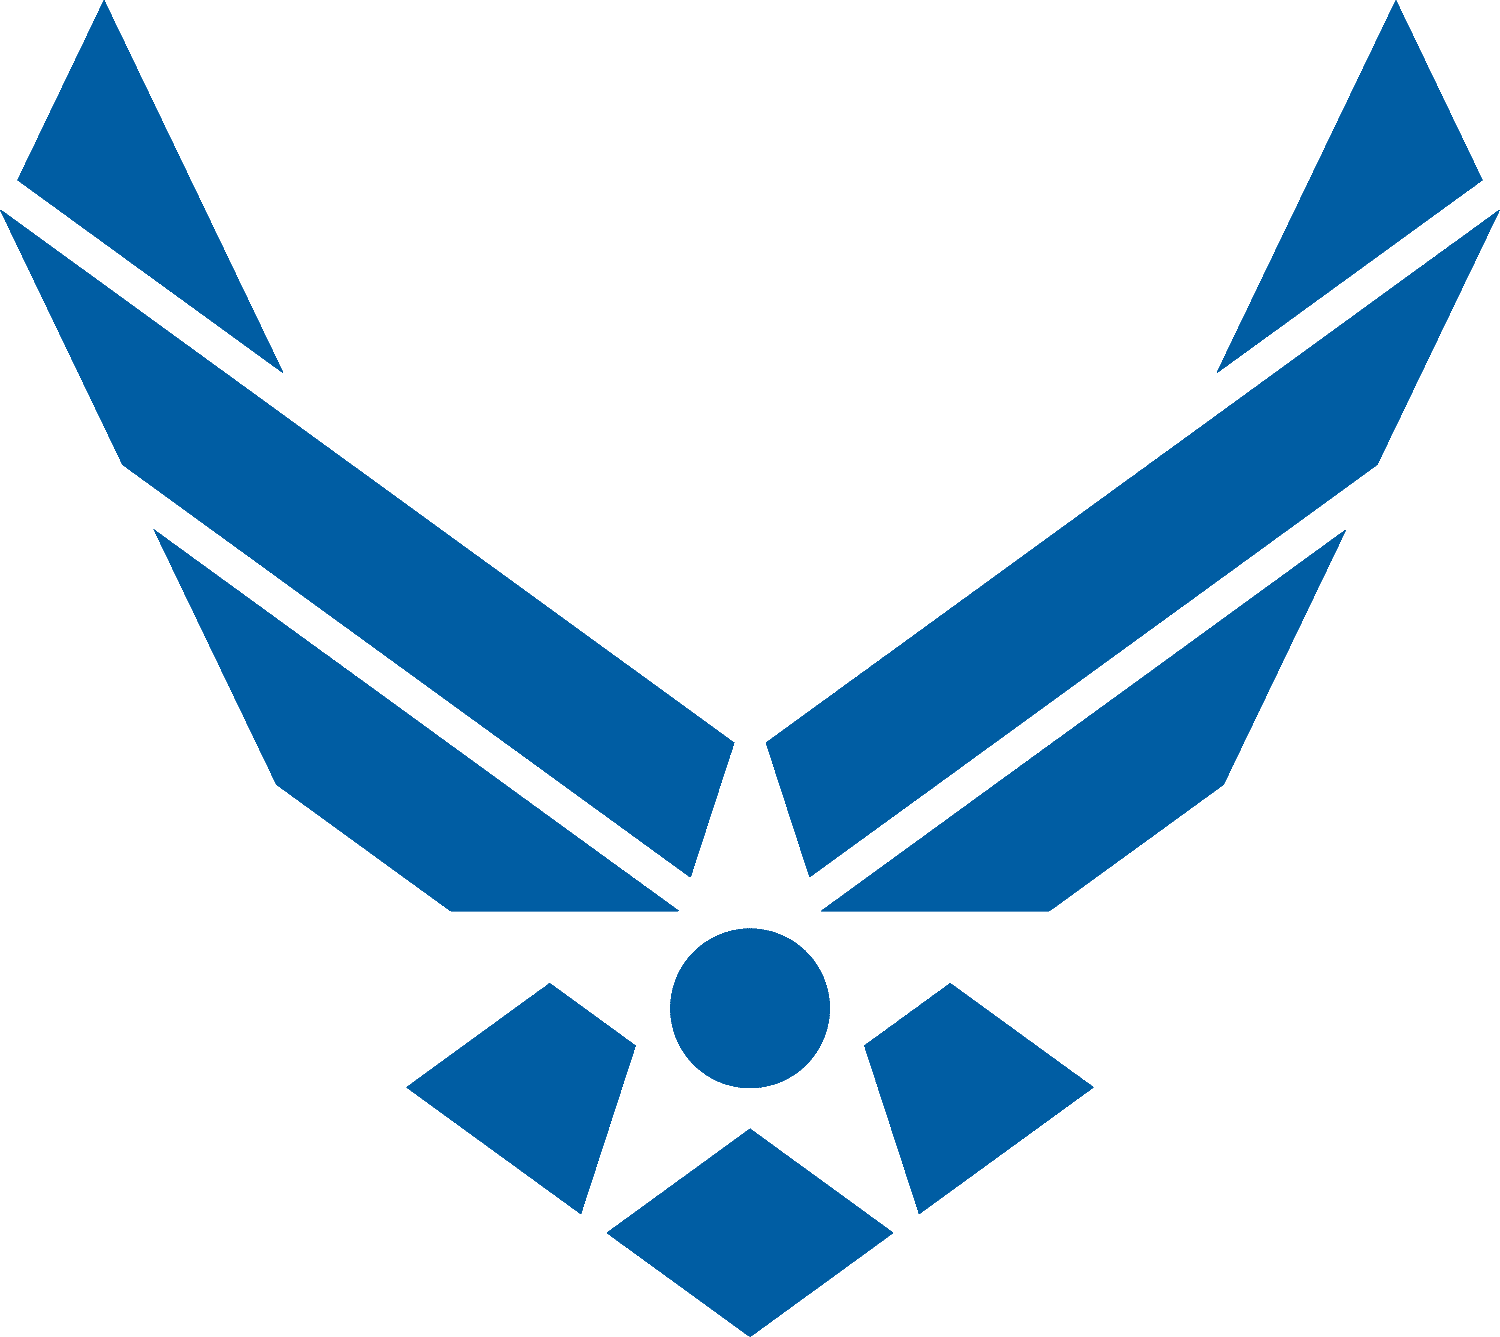 Air Force symbol